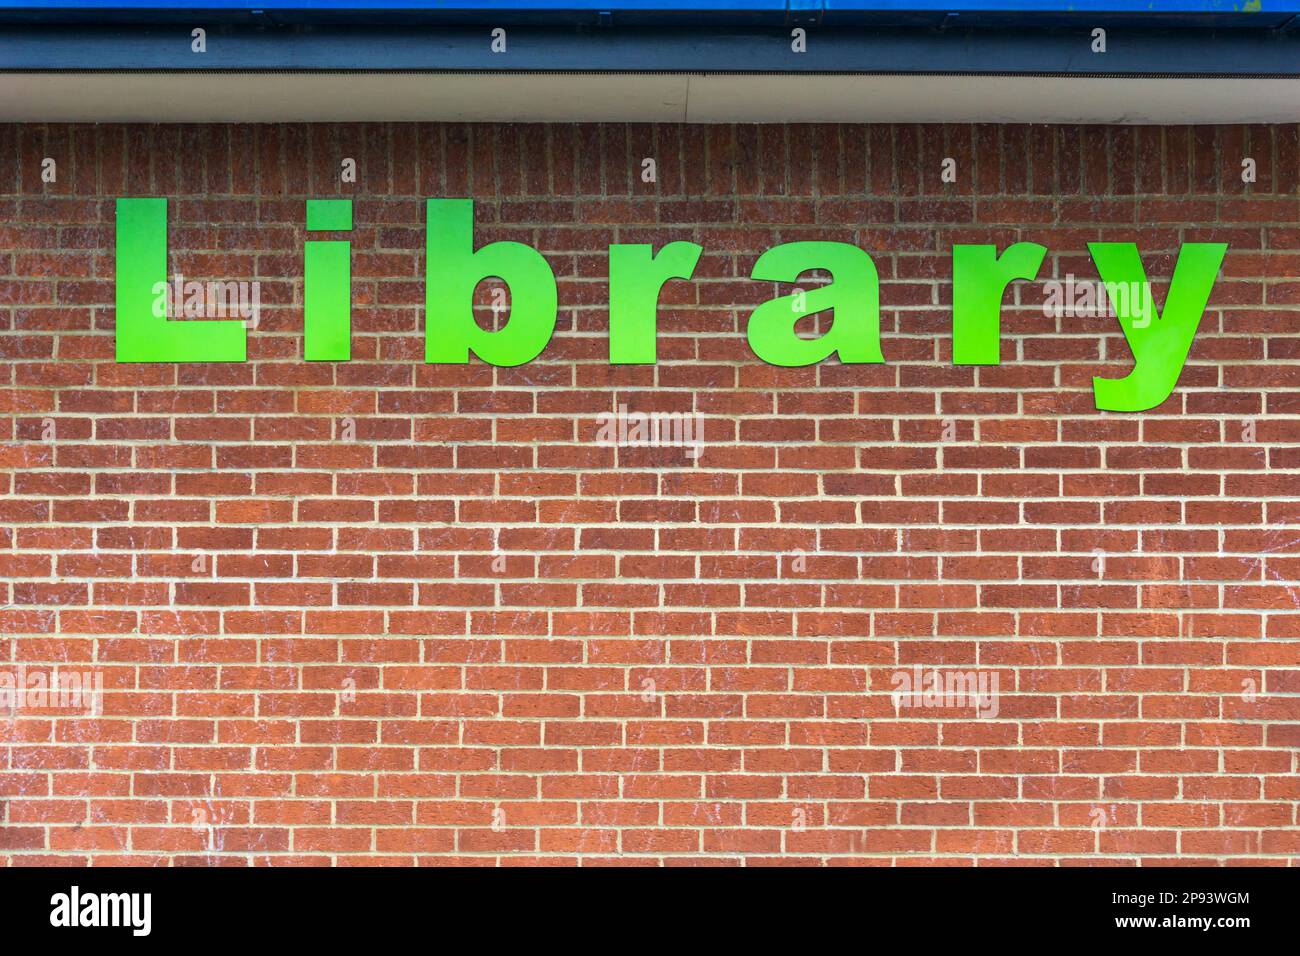 Le mot Bibliothèque en grandes lettres vertes sur le mur de briques d'une bibliothèque publique. Banque D'Images